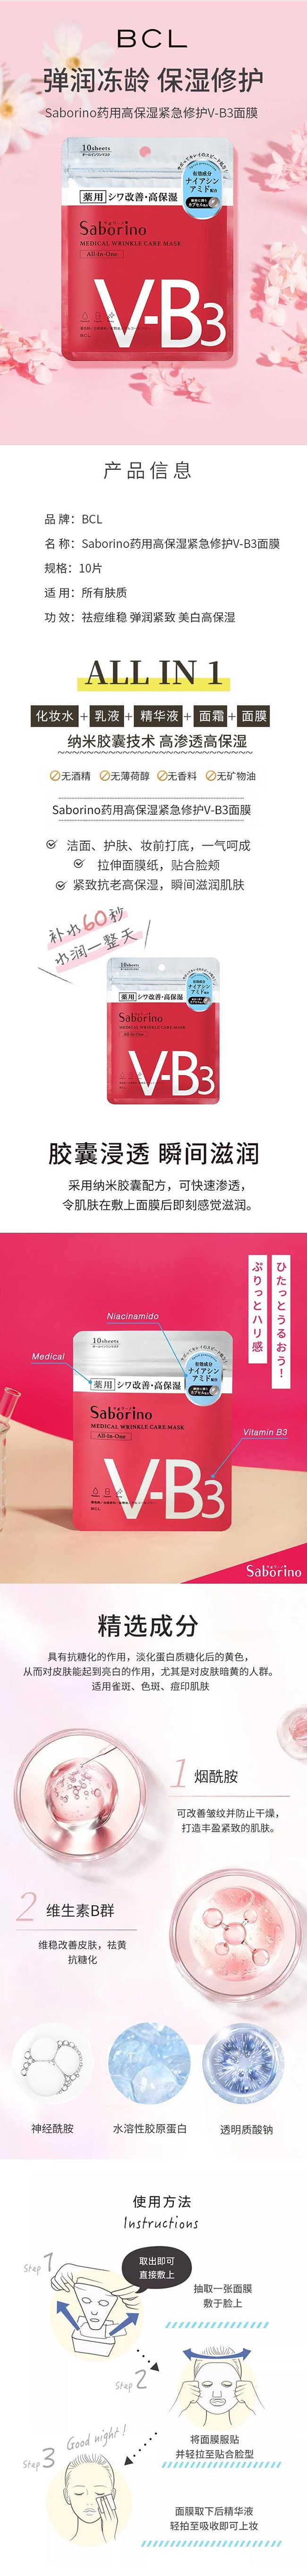 【日本直郵】BCL SABORINO 藥用高保濕抗皺急速修護面膜 V-B3 10枚